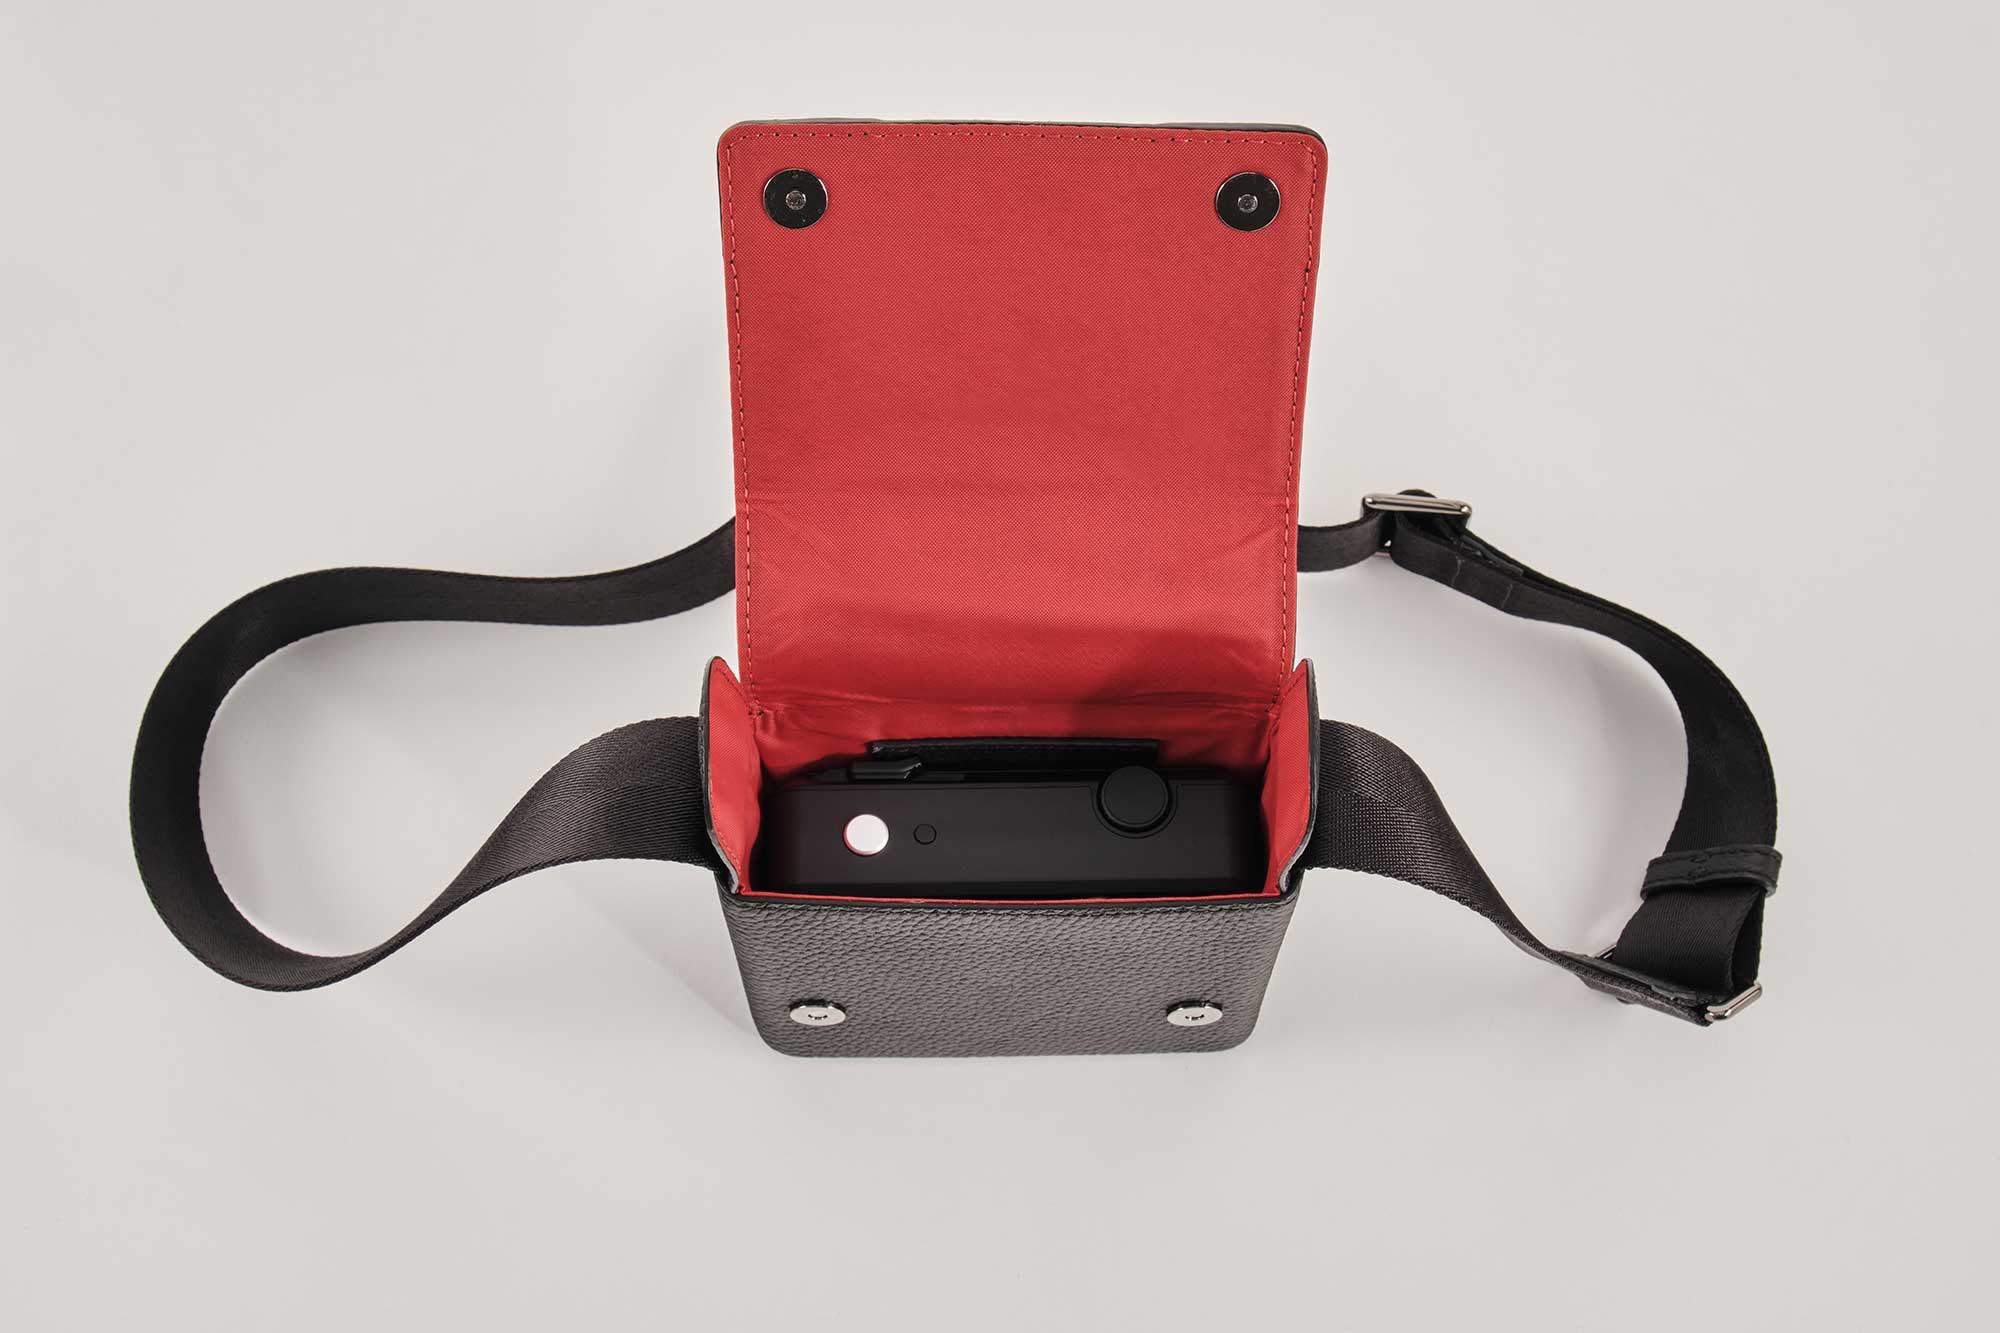 Camera bag Micro Bag Red Dot Edition - Leica Sofort 2 bag